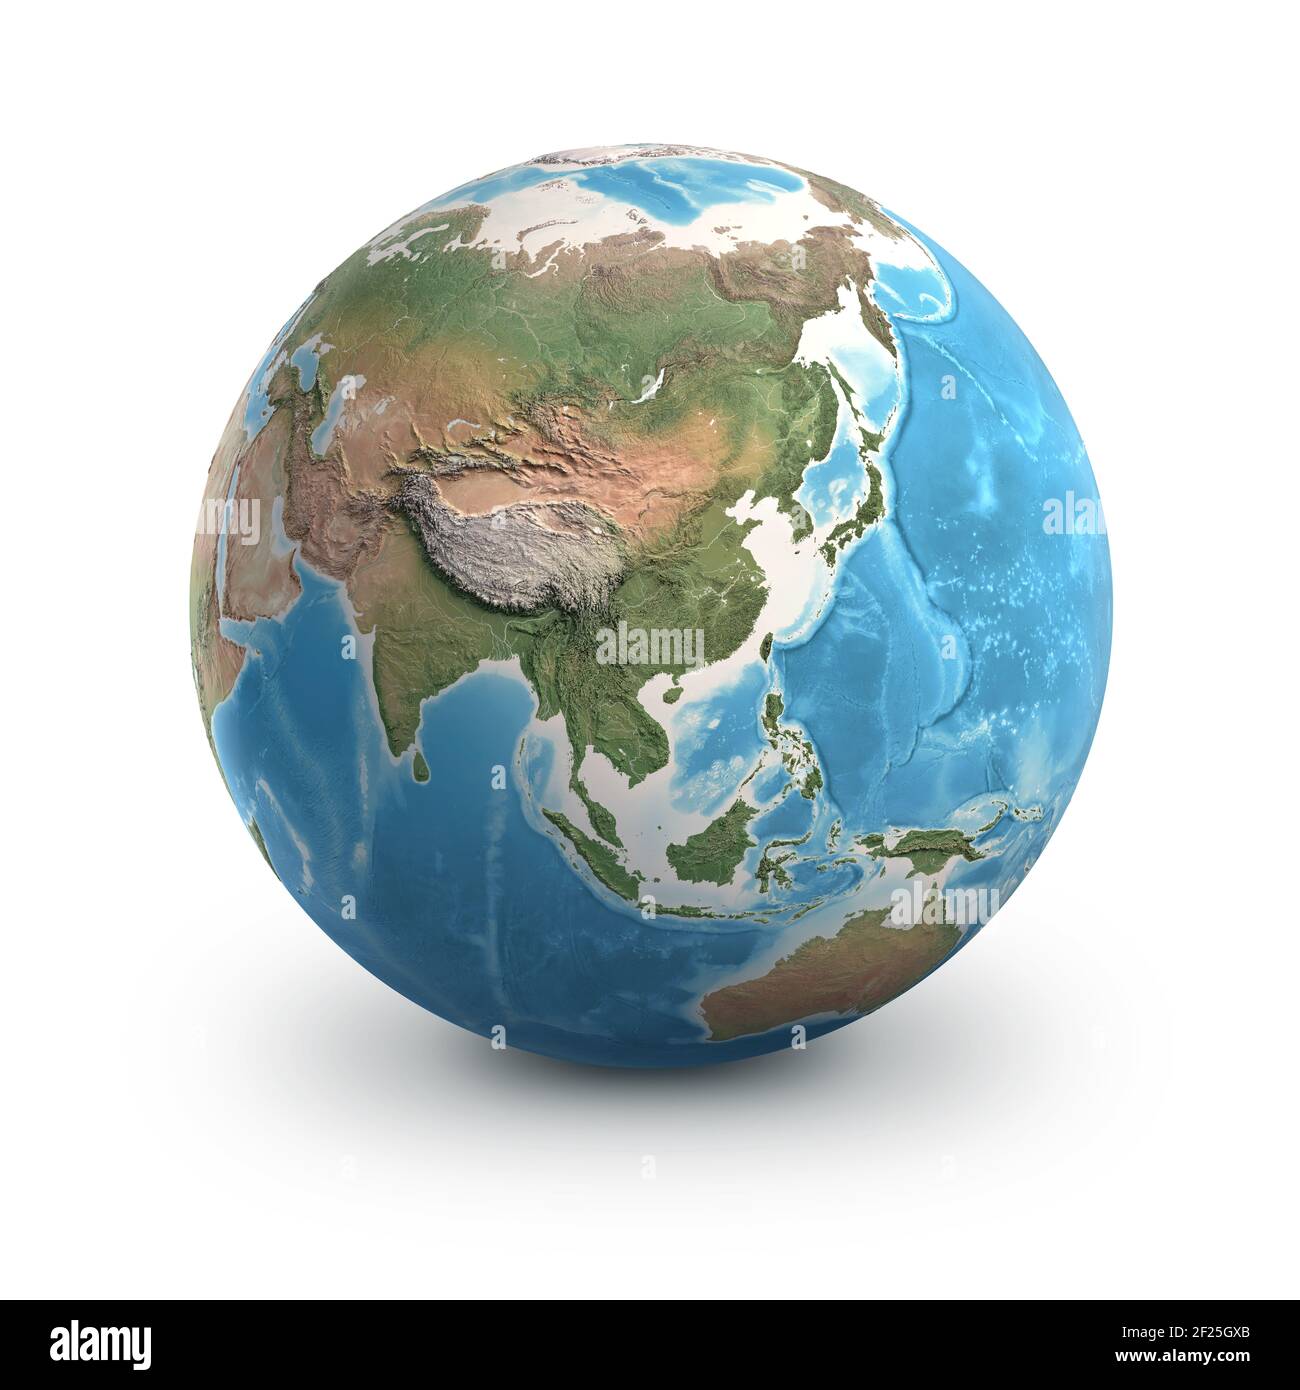 Pianeta Terra globo, isolato su bianco. Geografia del mondo dallo spazio, focalizzata sull'Asia - illustrazione 3D, elementi di questa immagine fornita dalla NASA. Foto Stock